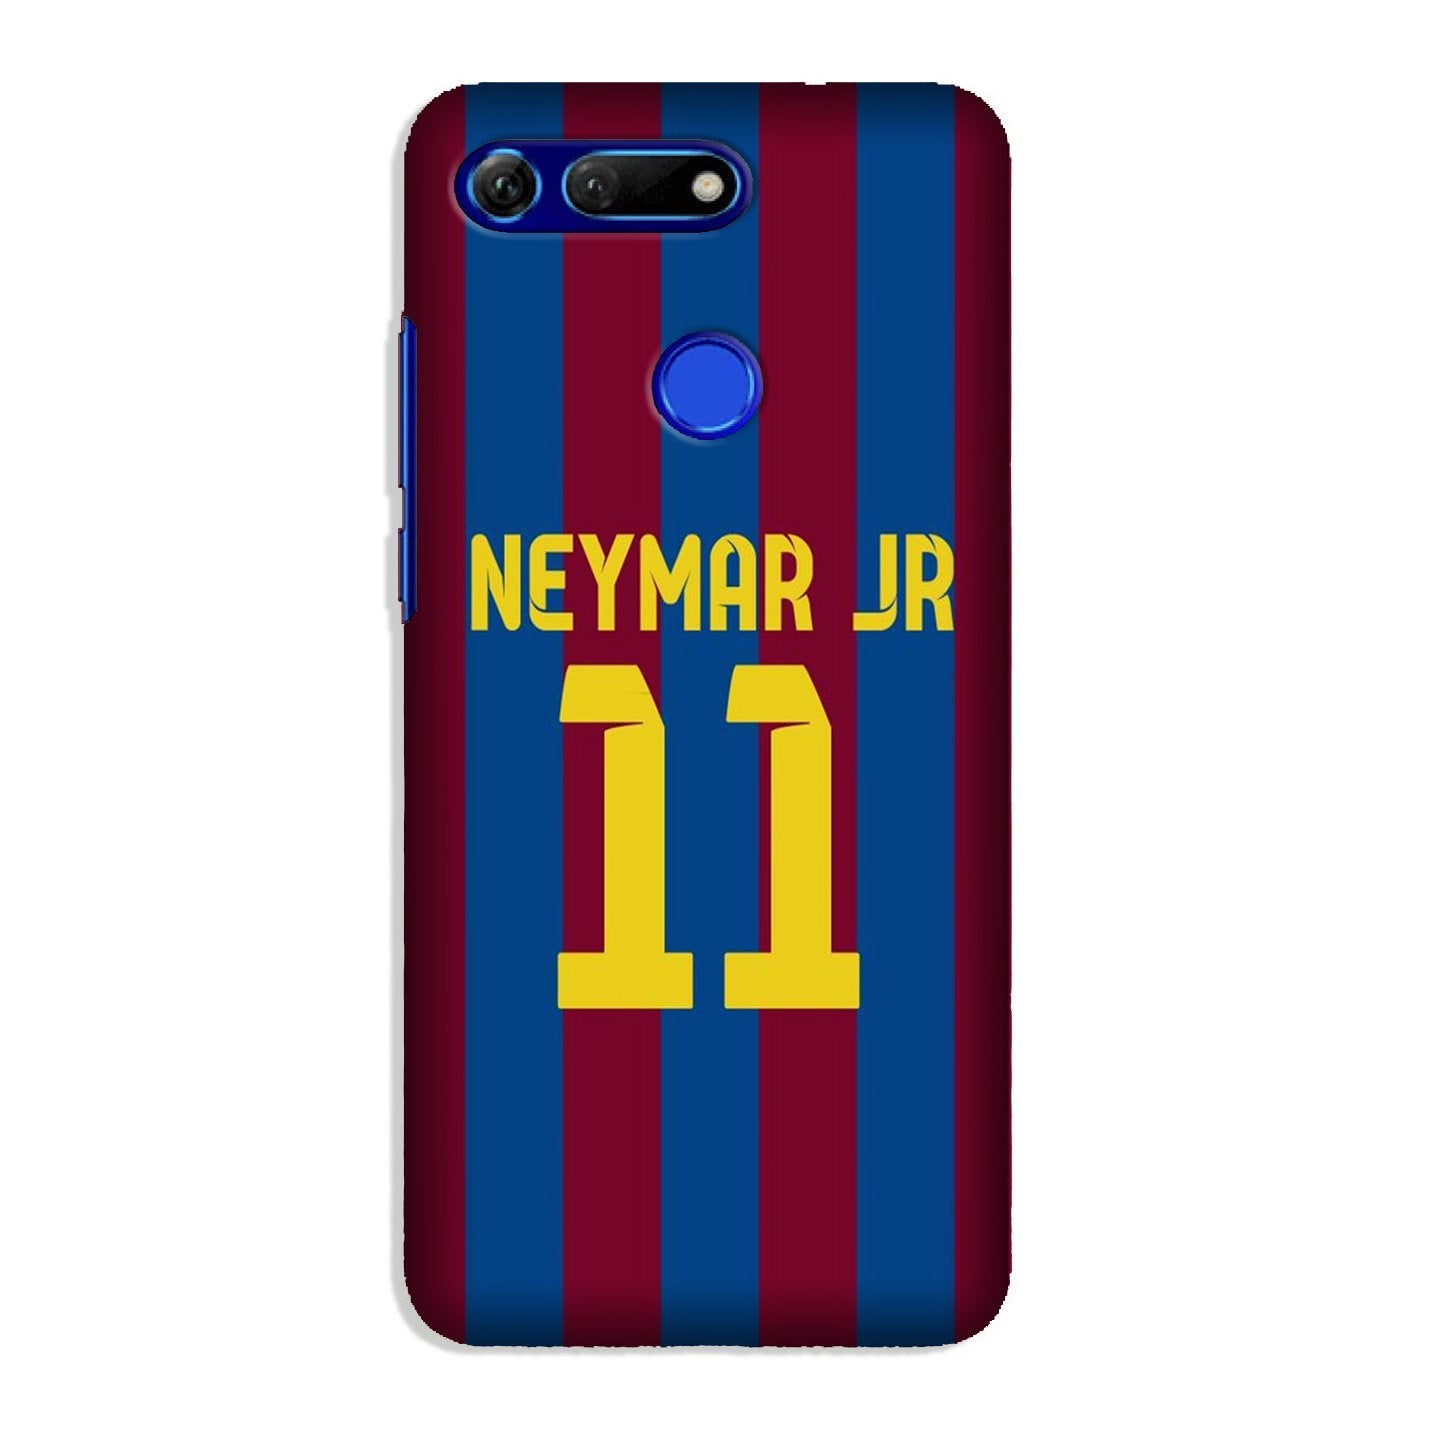 Neymar Jr Case for Honor View 20(Design - 162)